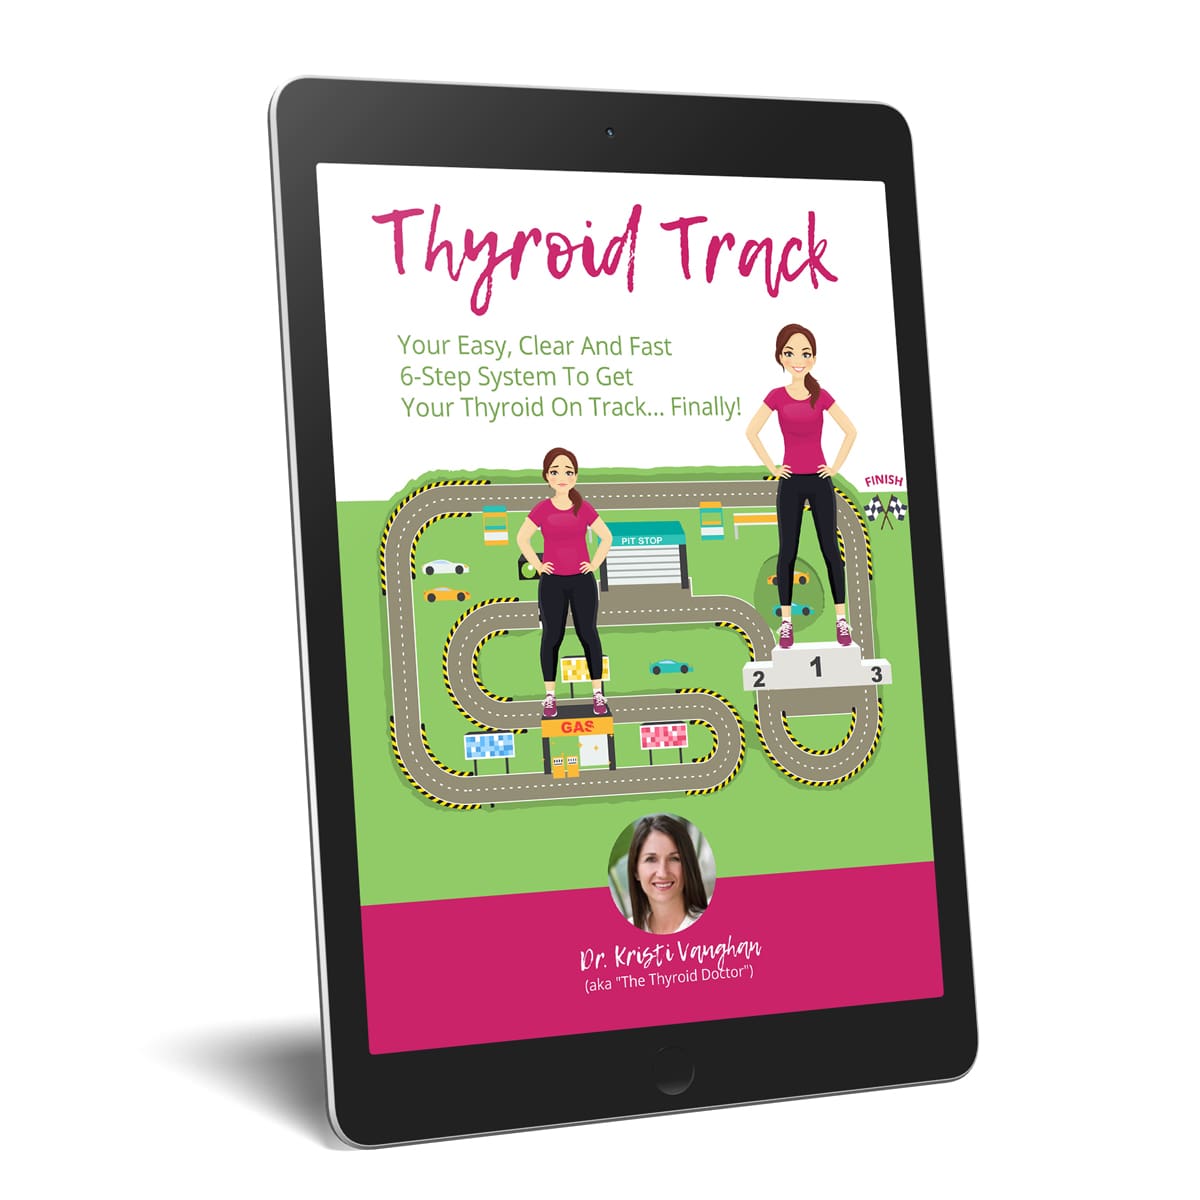 The Thyroid Track eBook on iPad